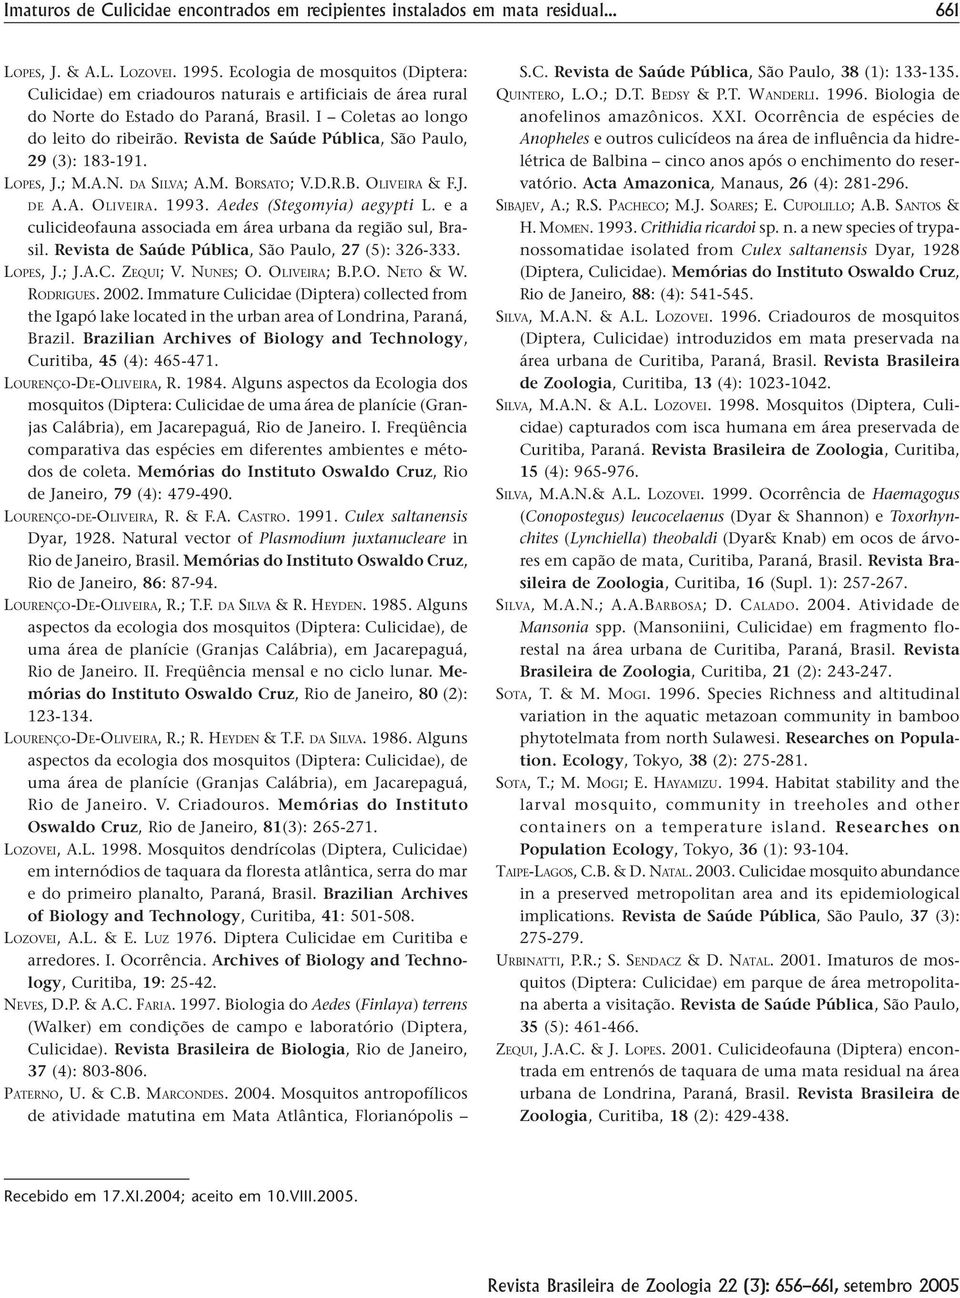 Revista de Saúde Pública, São Paulo, 29 (3): 183-191. LOPES, J.; M.A.N. DA SILVA; A.M. BORSATO; V.D.R.B. OLIVEIRA & F.J. DE A.A. OLIVEIRA. 1993. Aedes (Stegomyia) aegypti L.